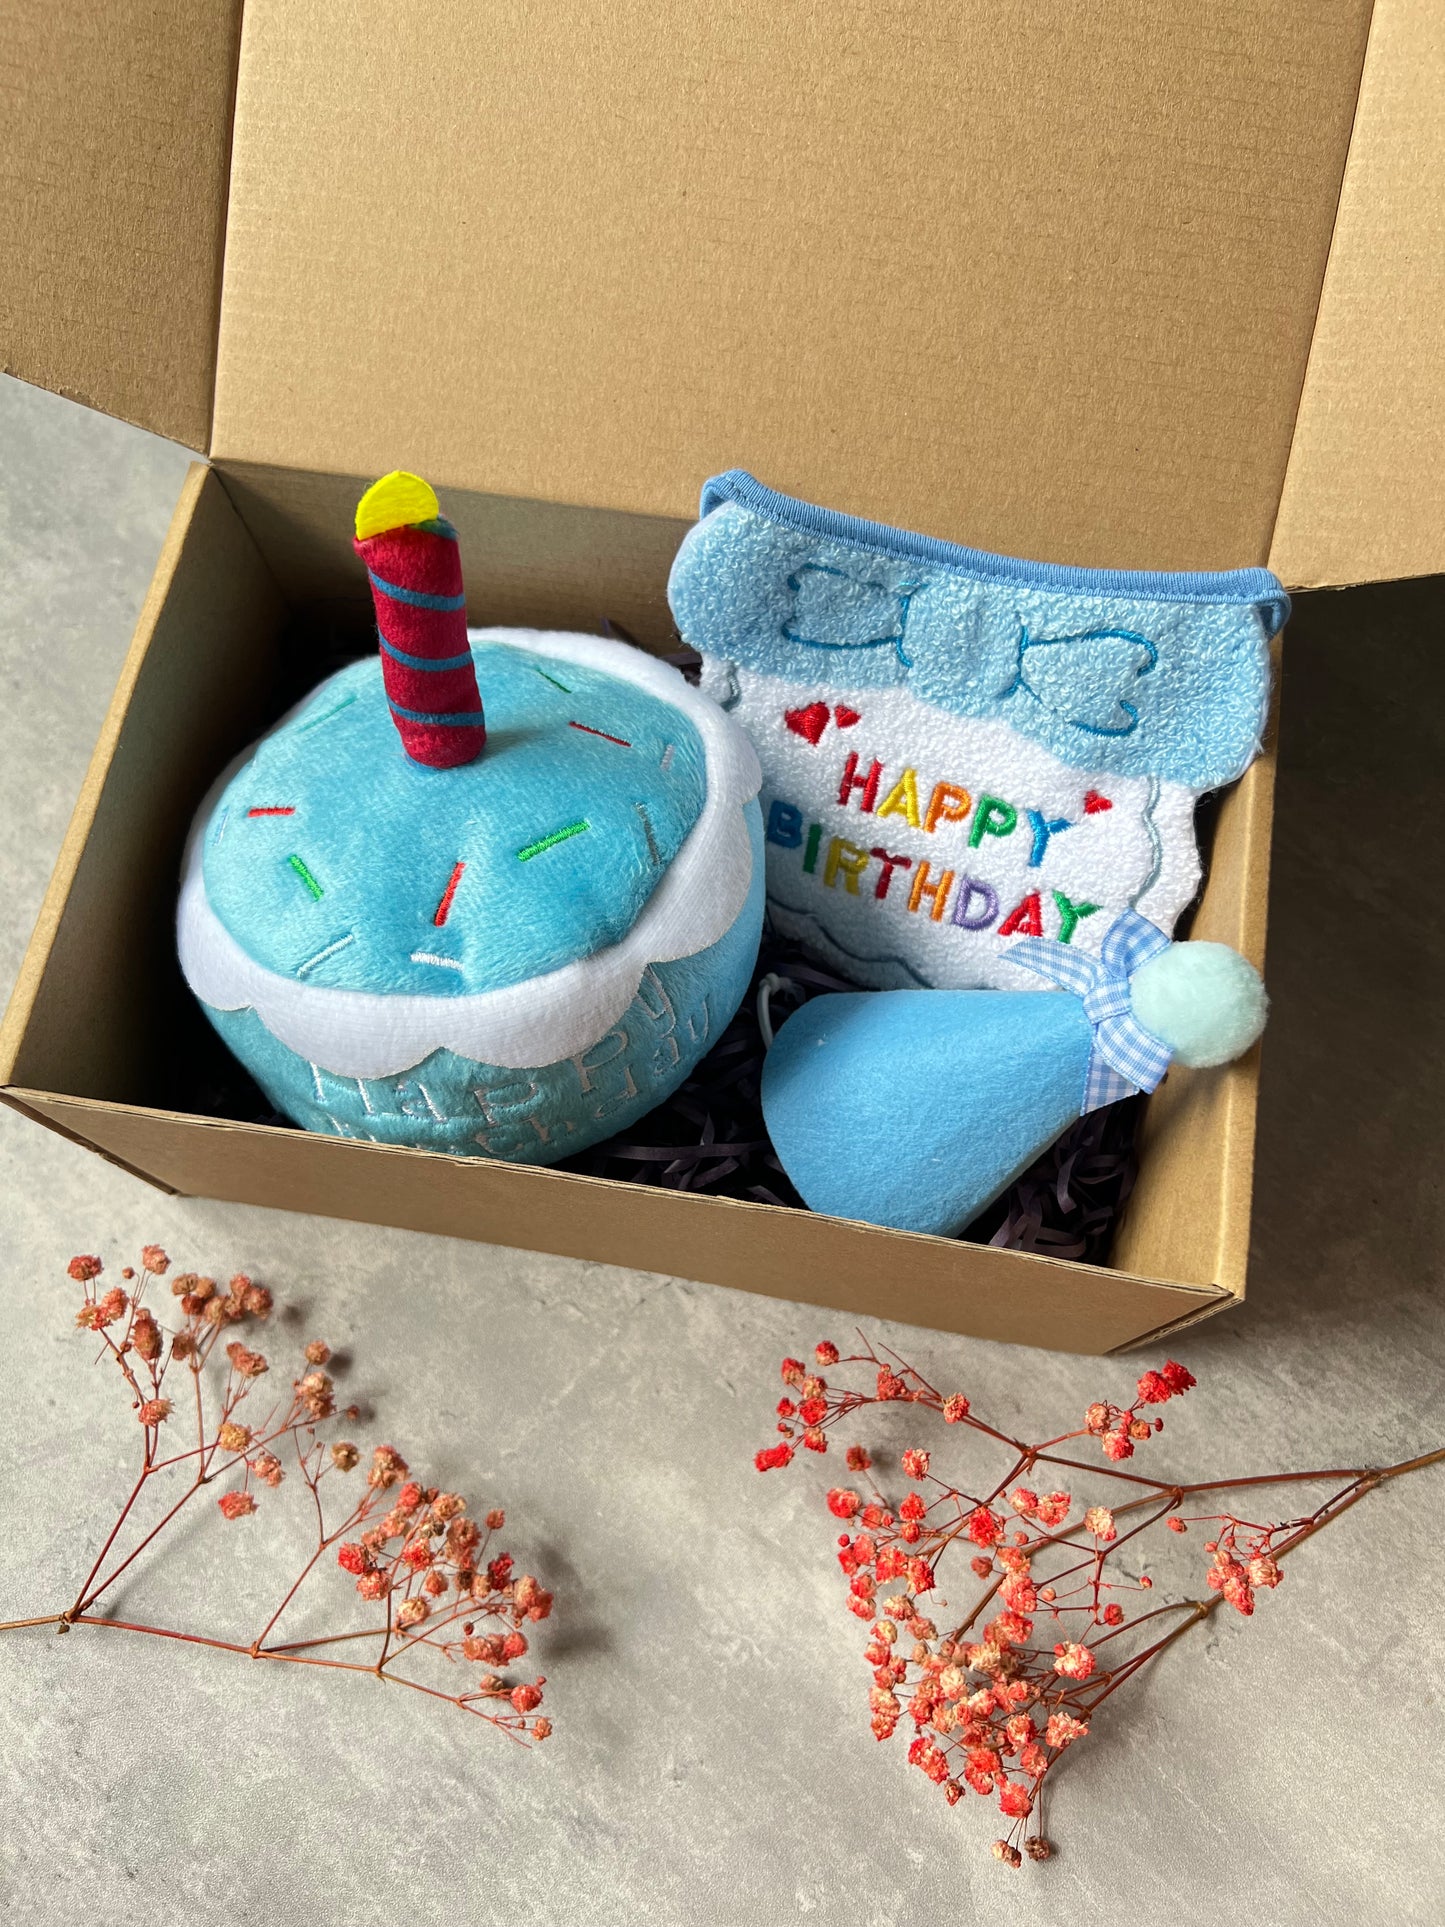 Birthday box